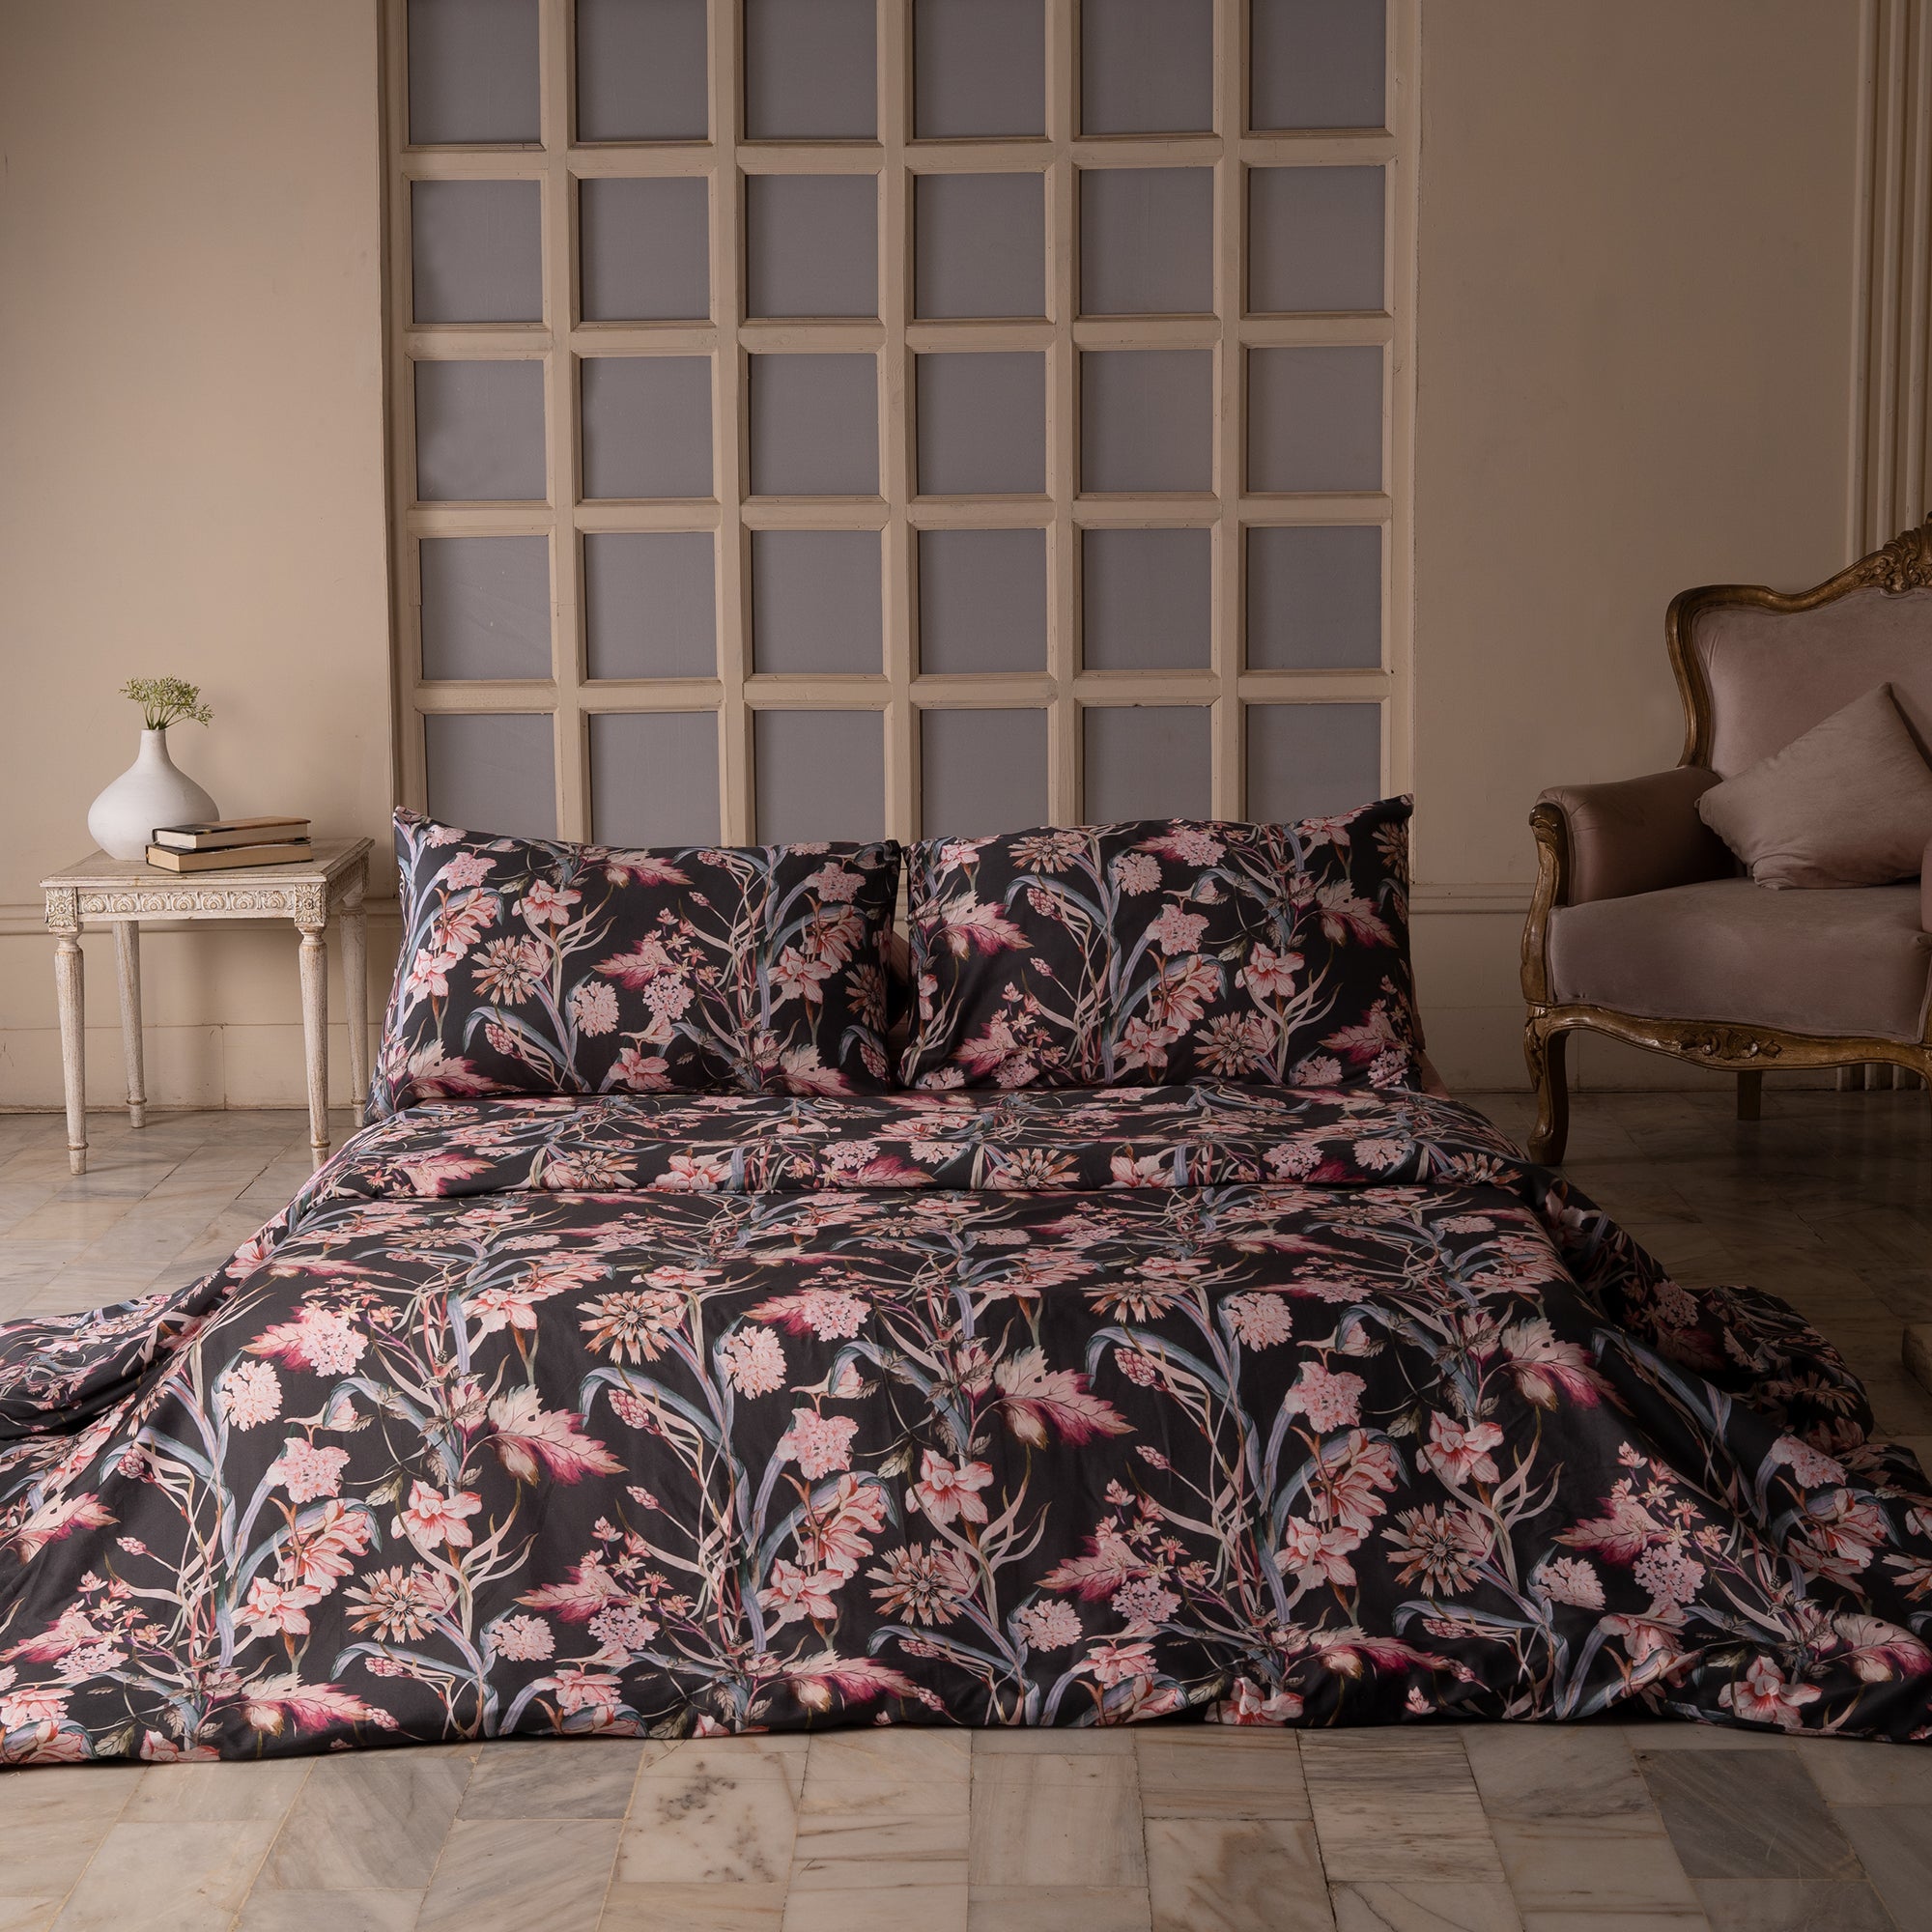 The Linen Company Bedding Wonderland Duvet Cover Set